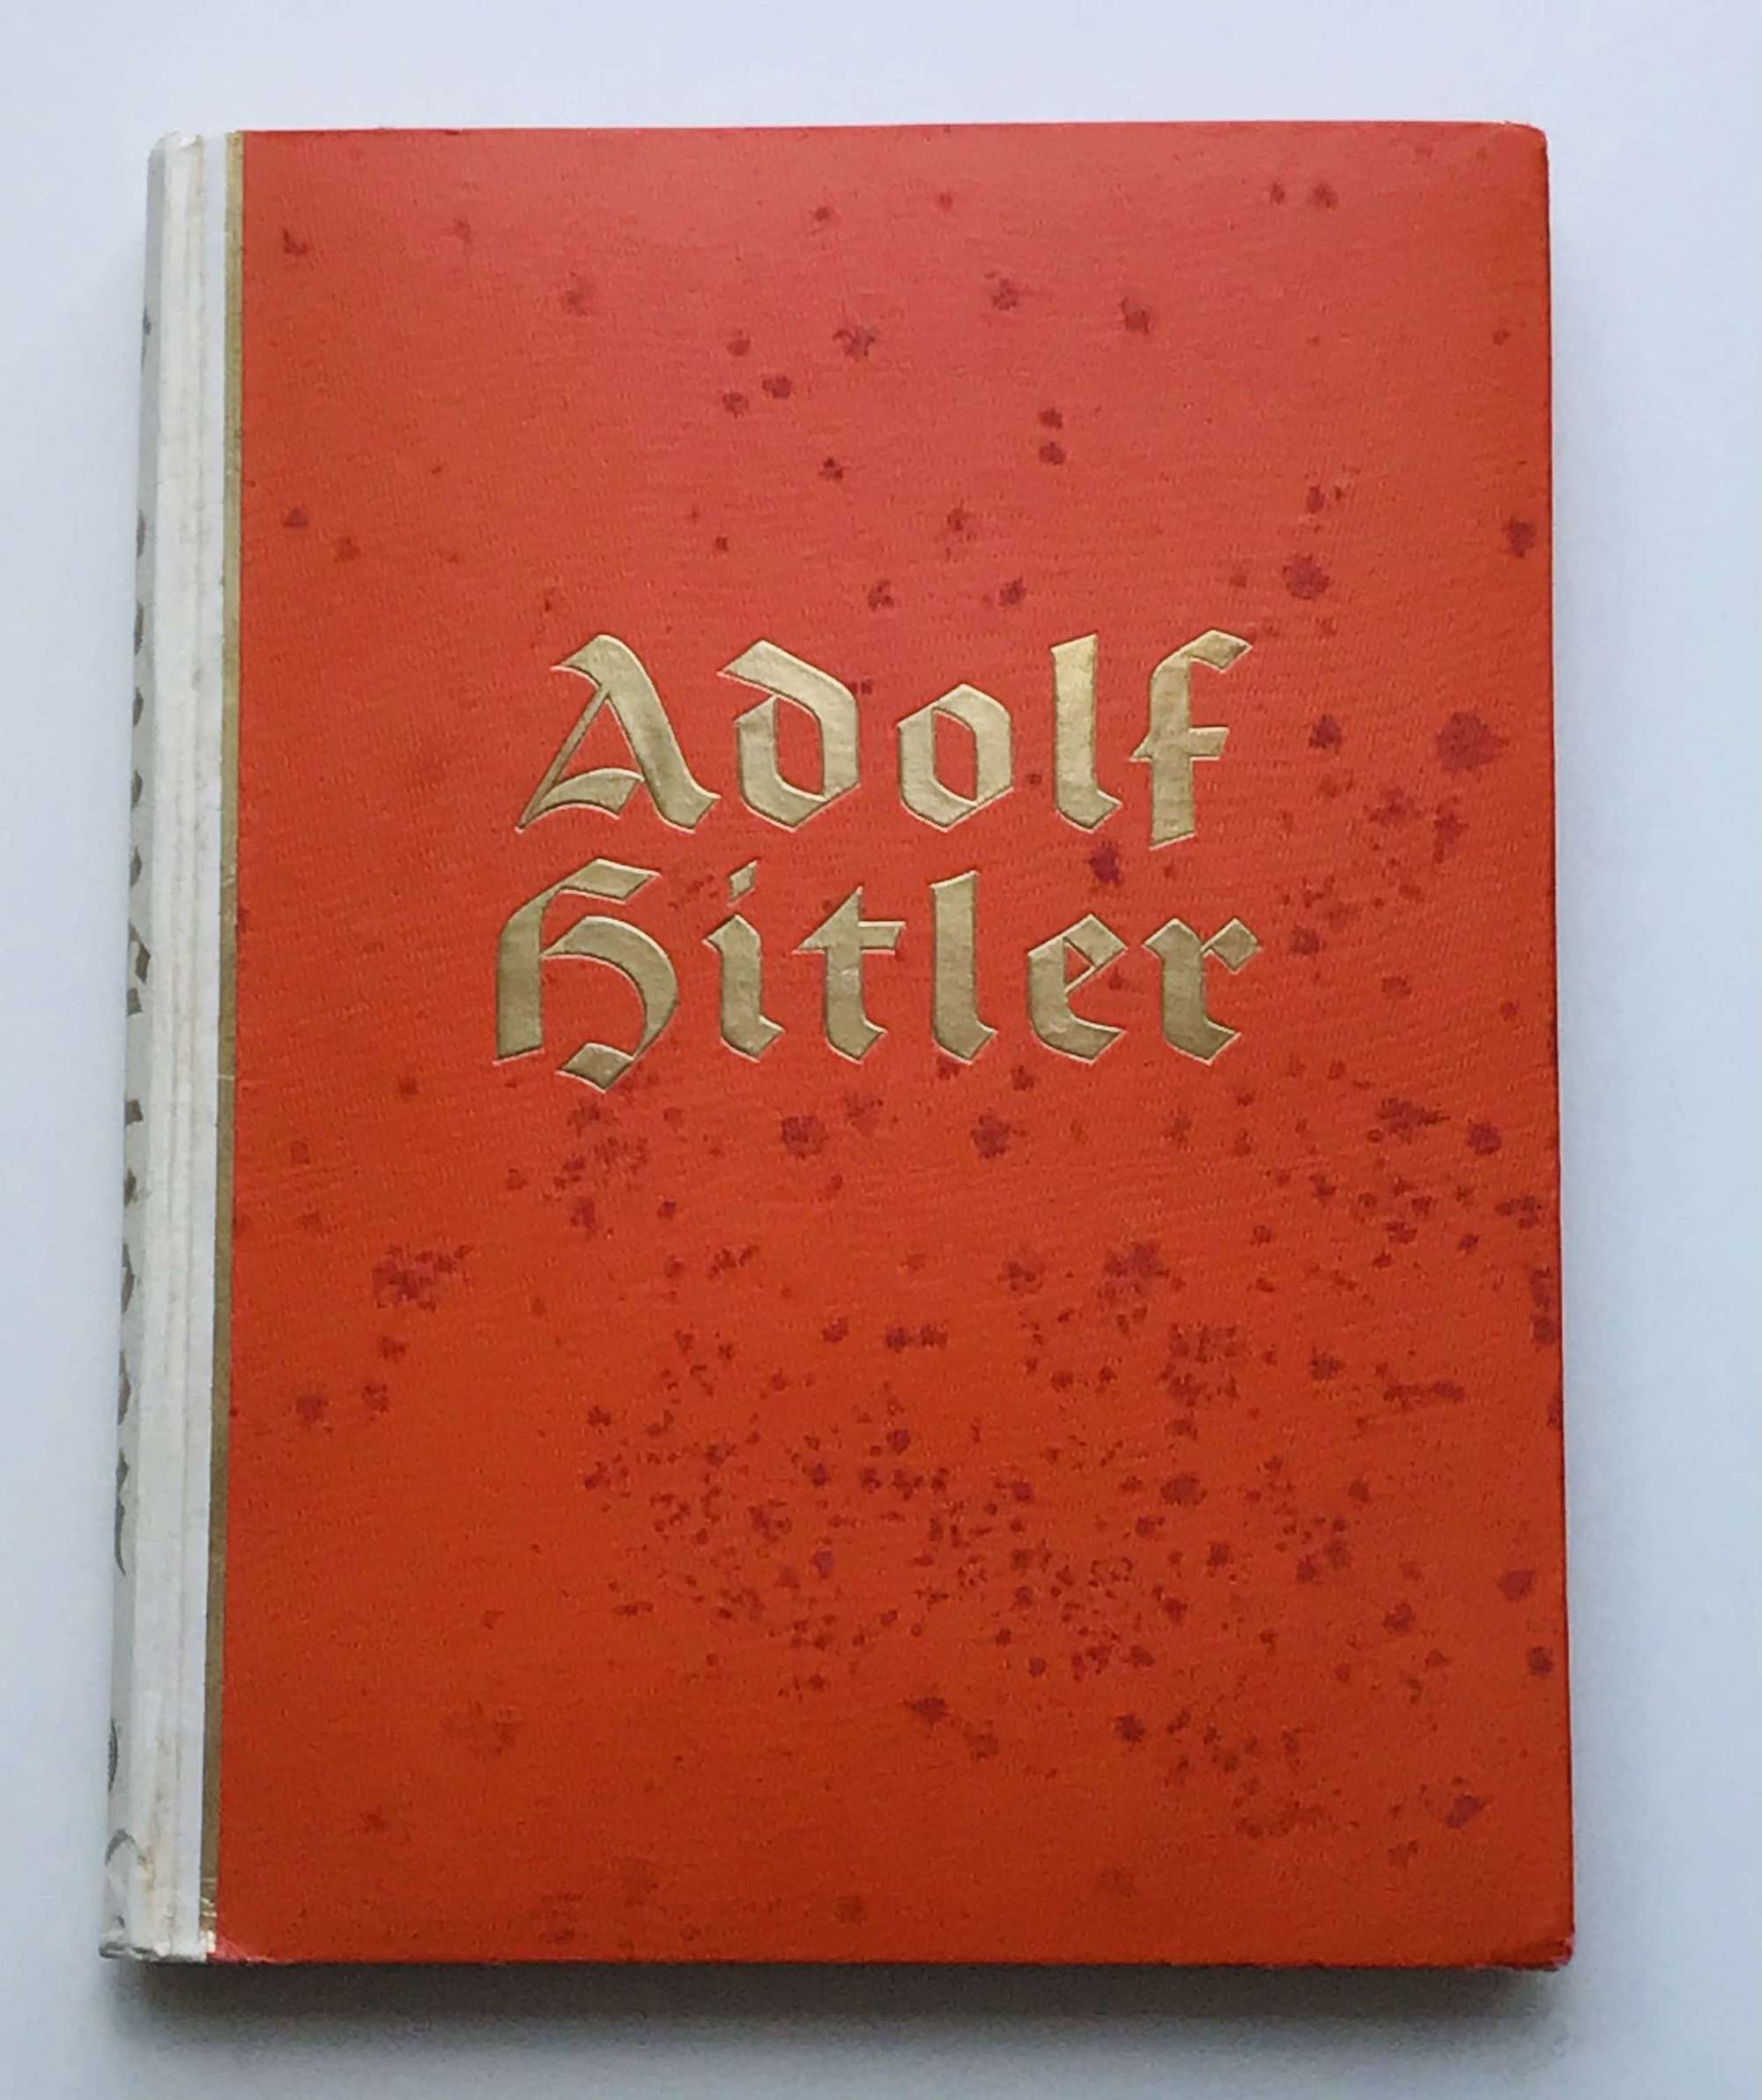 Adolf HItler cigarette card album